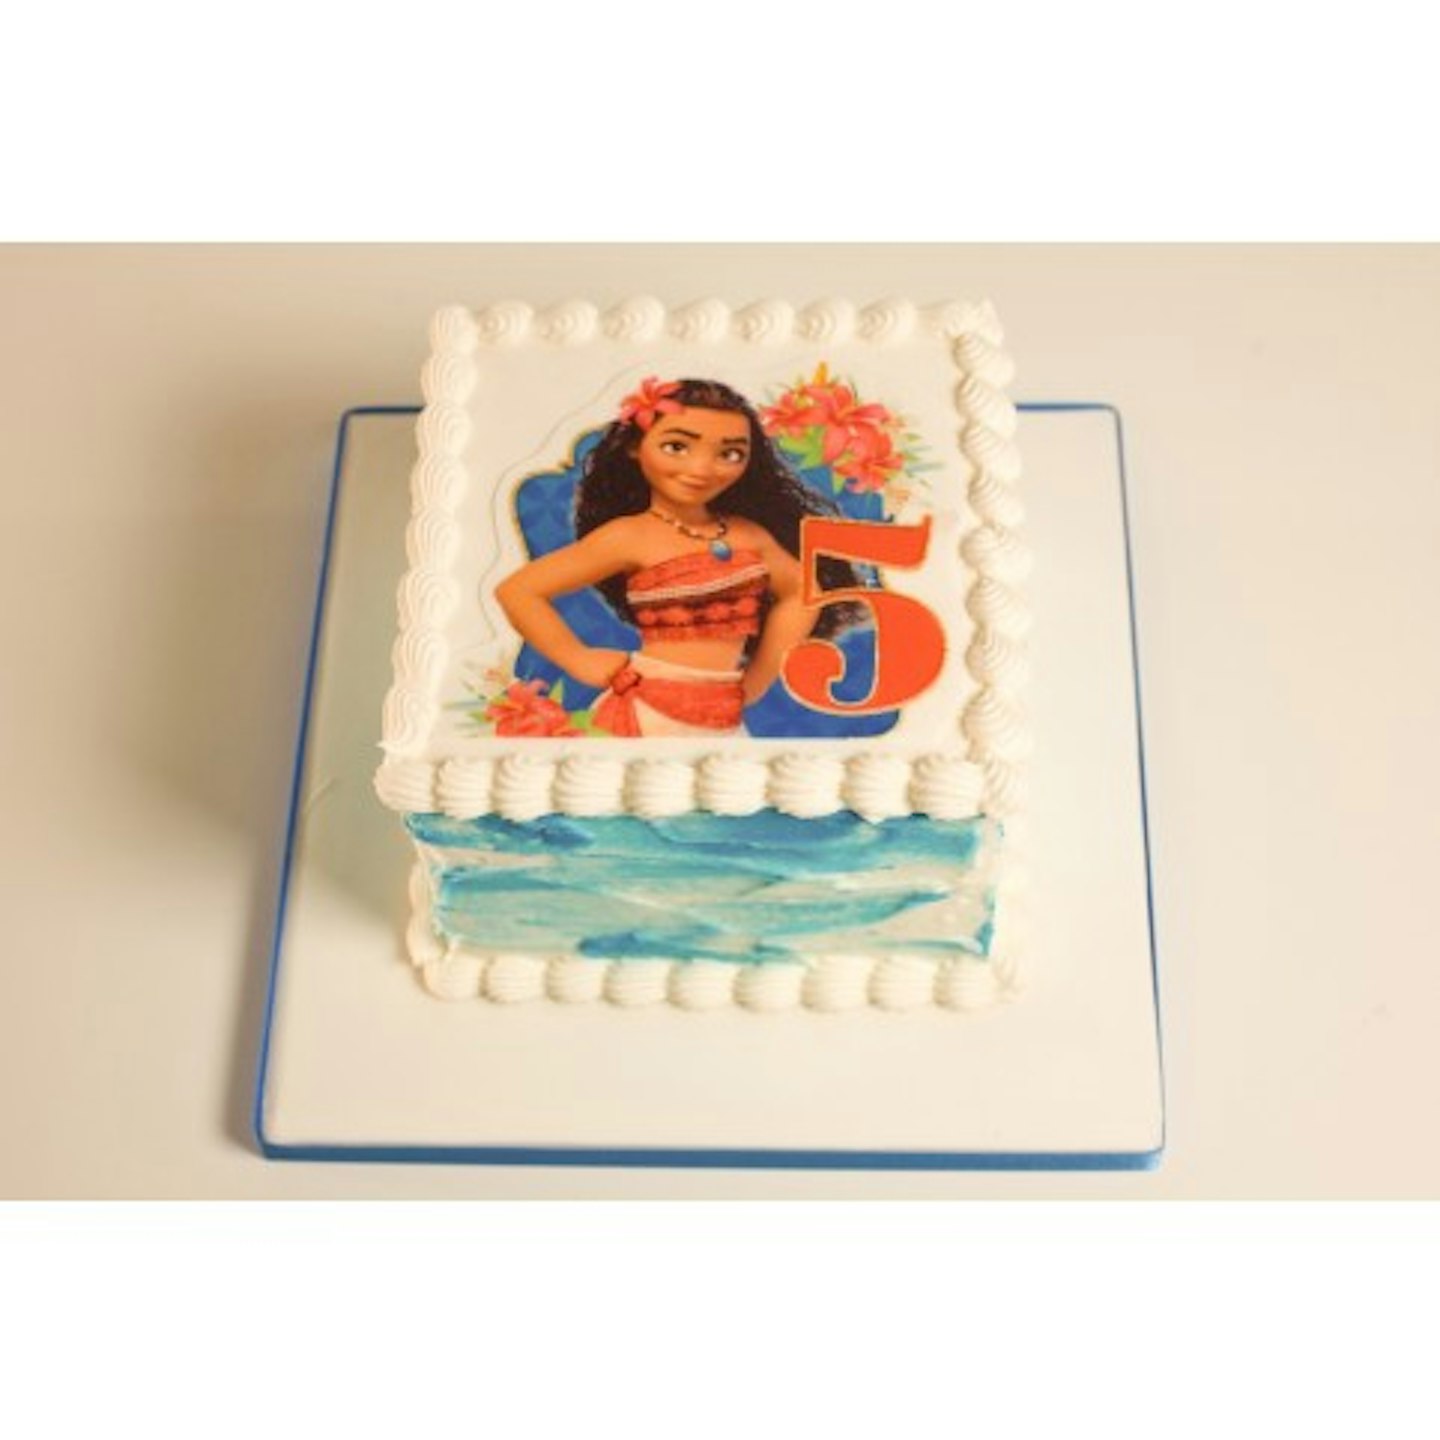 3D moana cakes 